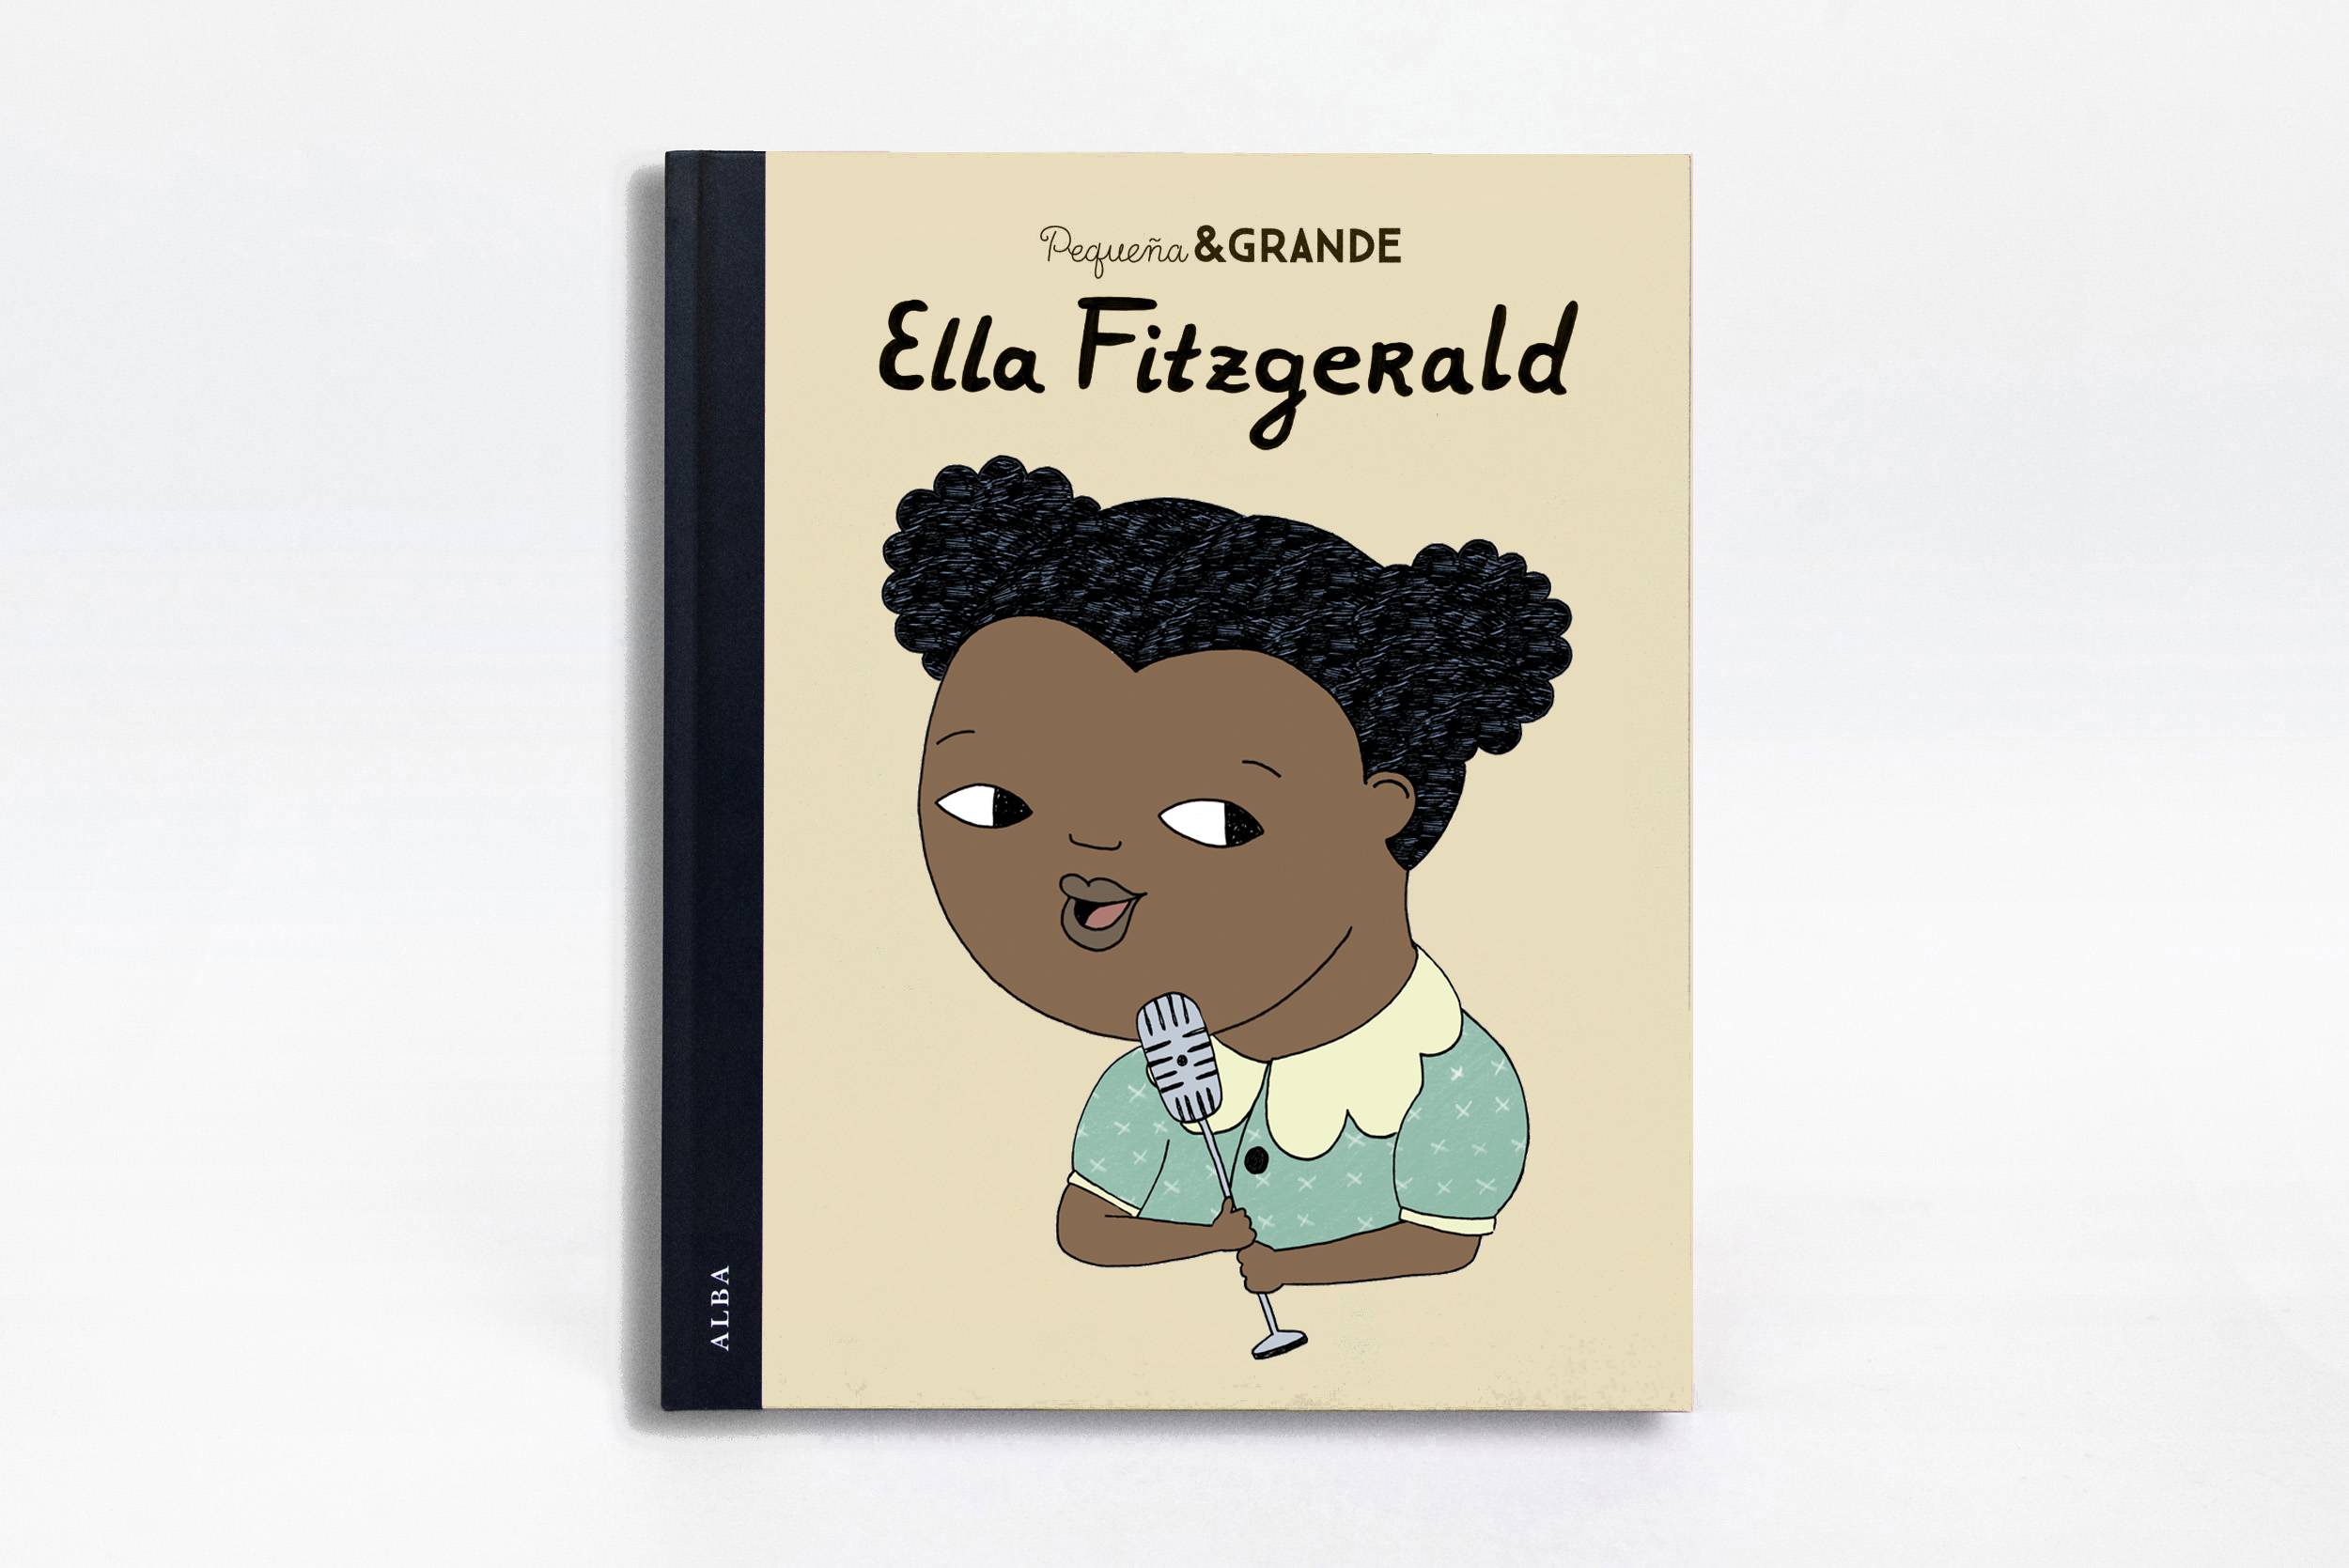 P&G Ella Fitzgerald by Bàrbara Alca - Creative Work